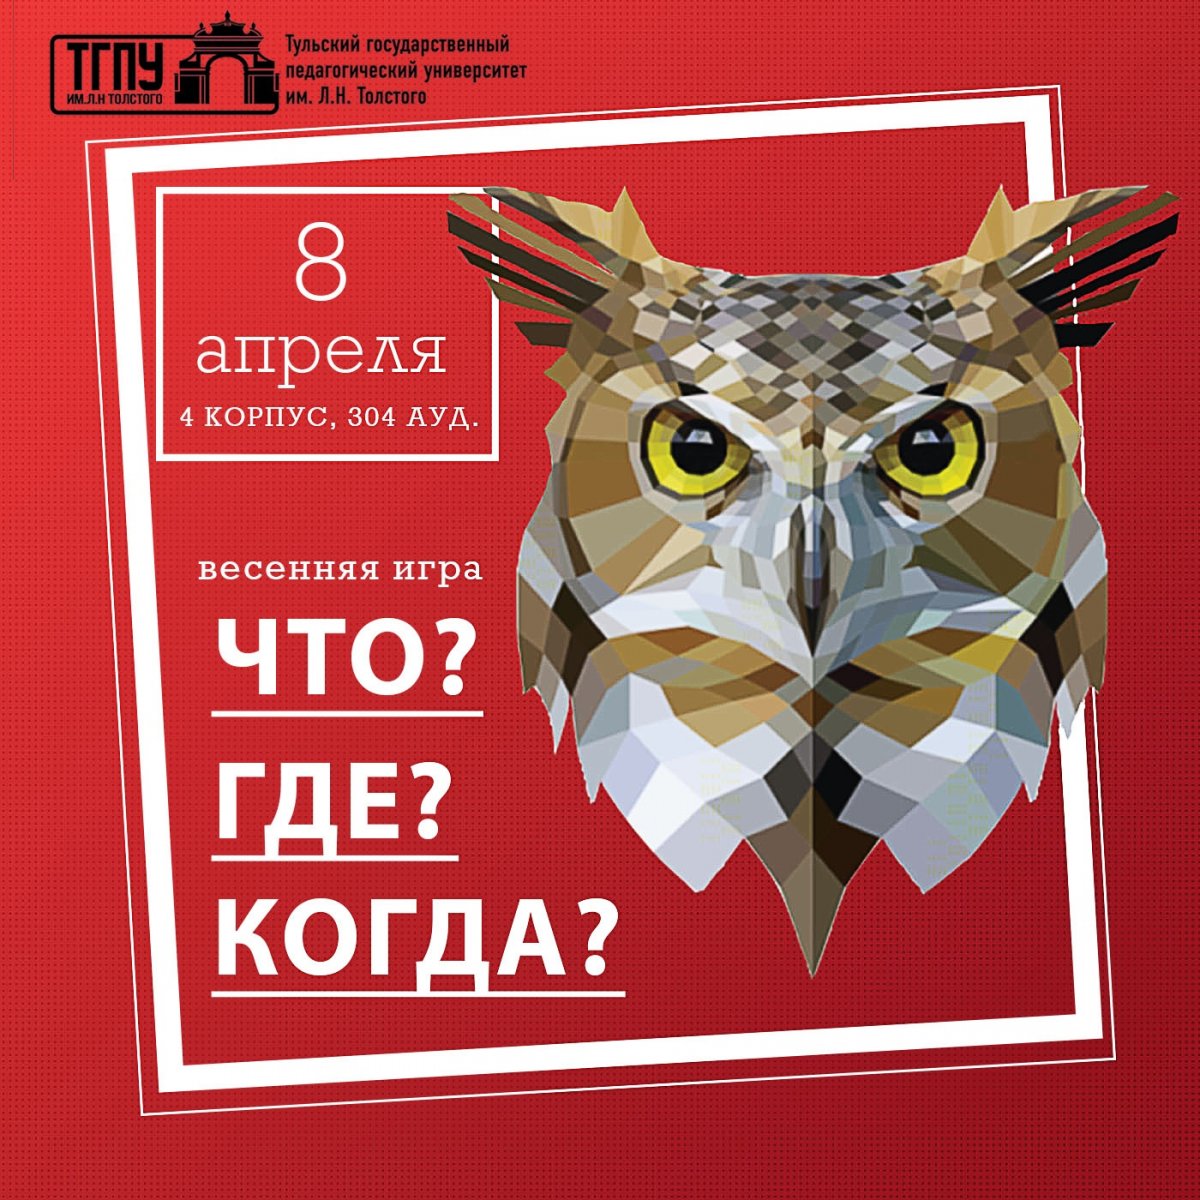 8 апреля в ТГПУ им. Л.Н. Толстого состоится Весенняя интеллектуальная игра "Что? Где? Когда?" на кубок профкома студентов! 🏆